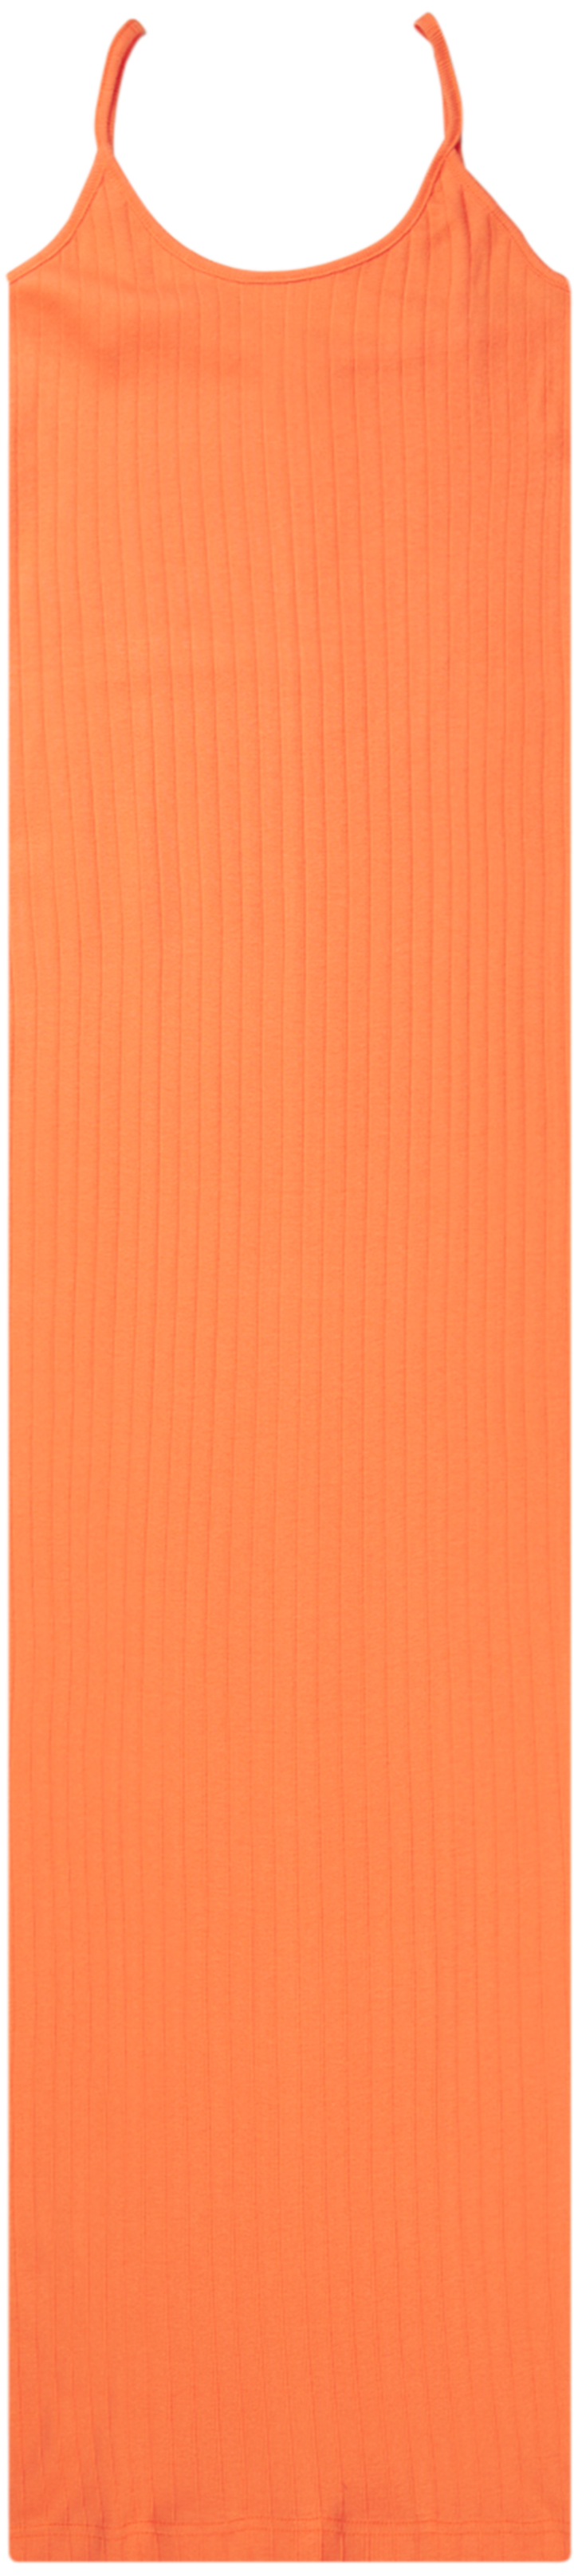 NPS Strap Dress Solid Colour, Orange